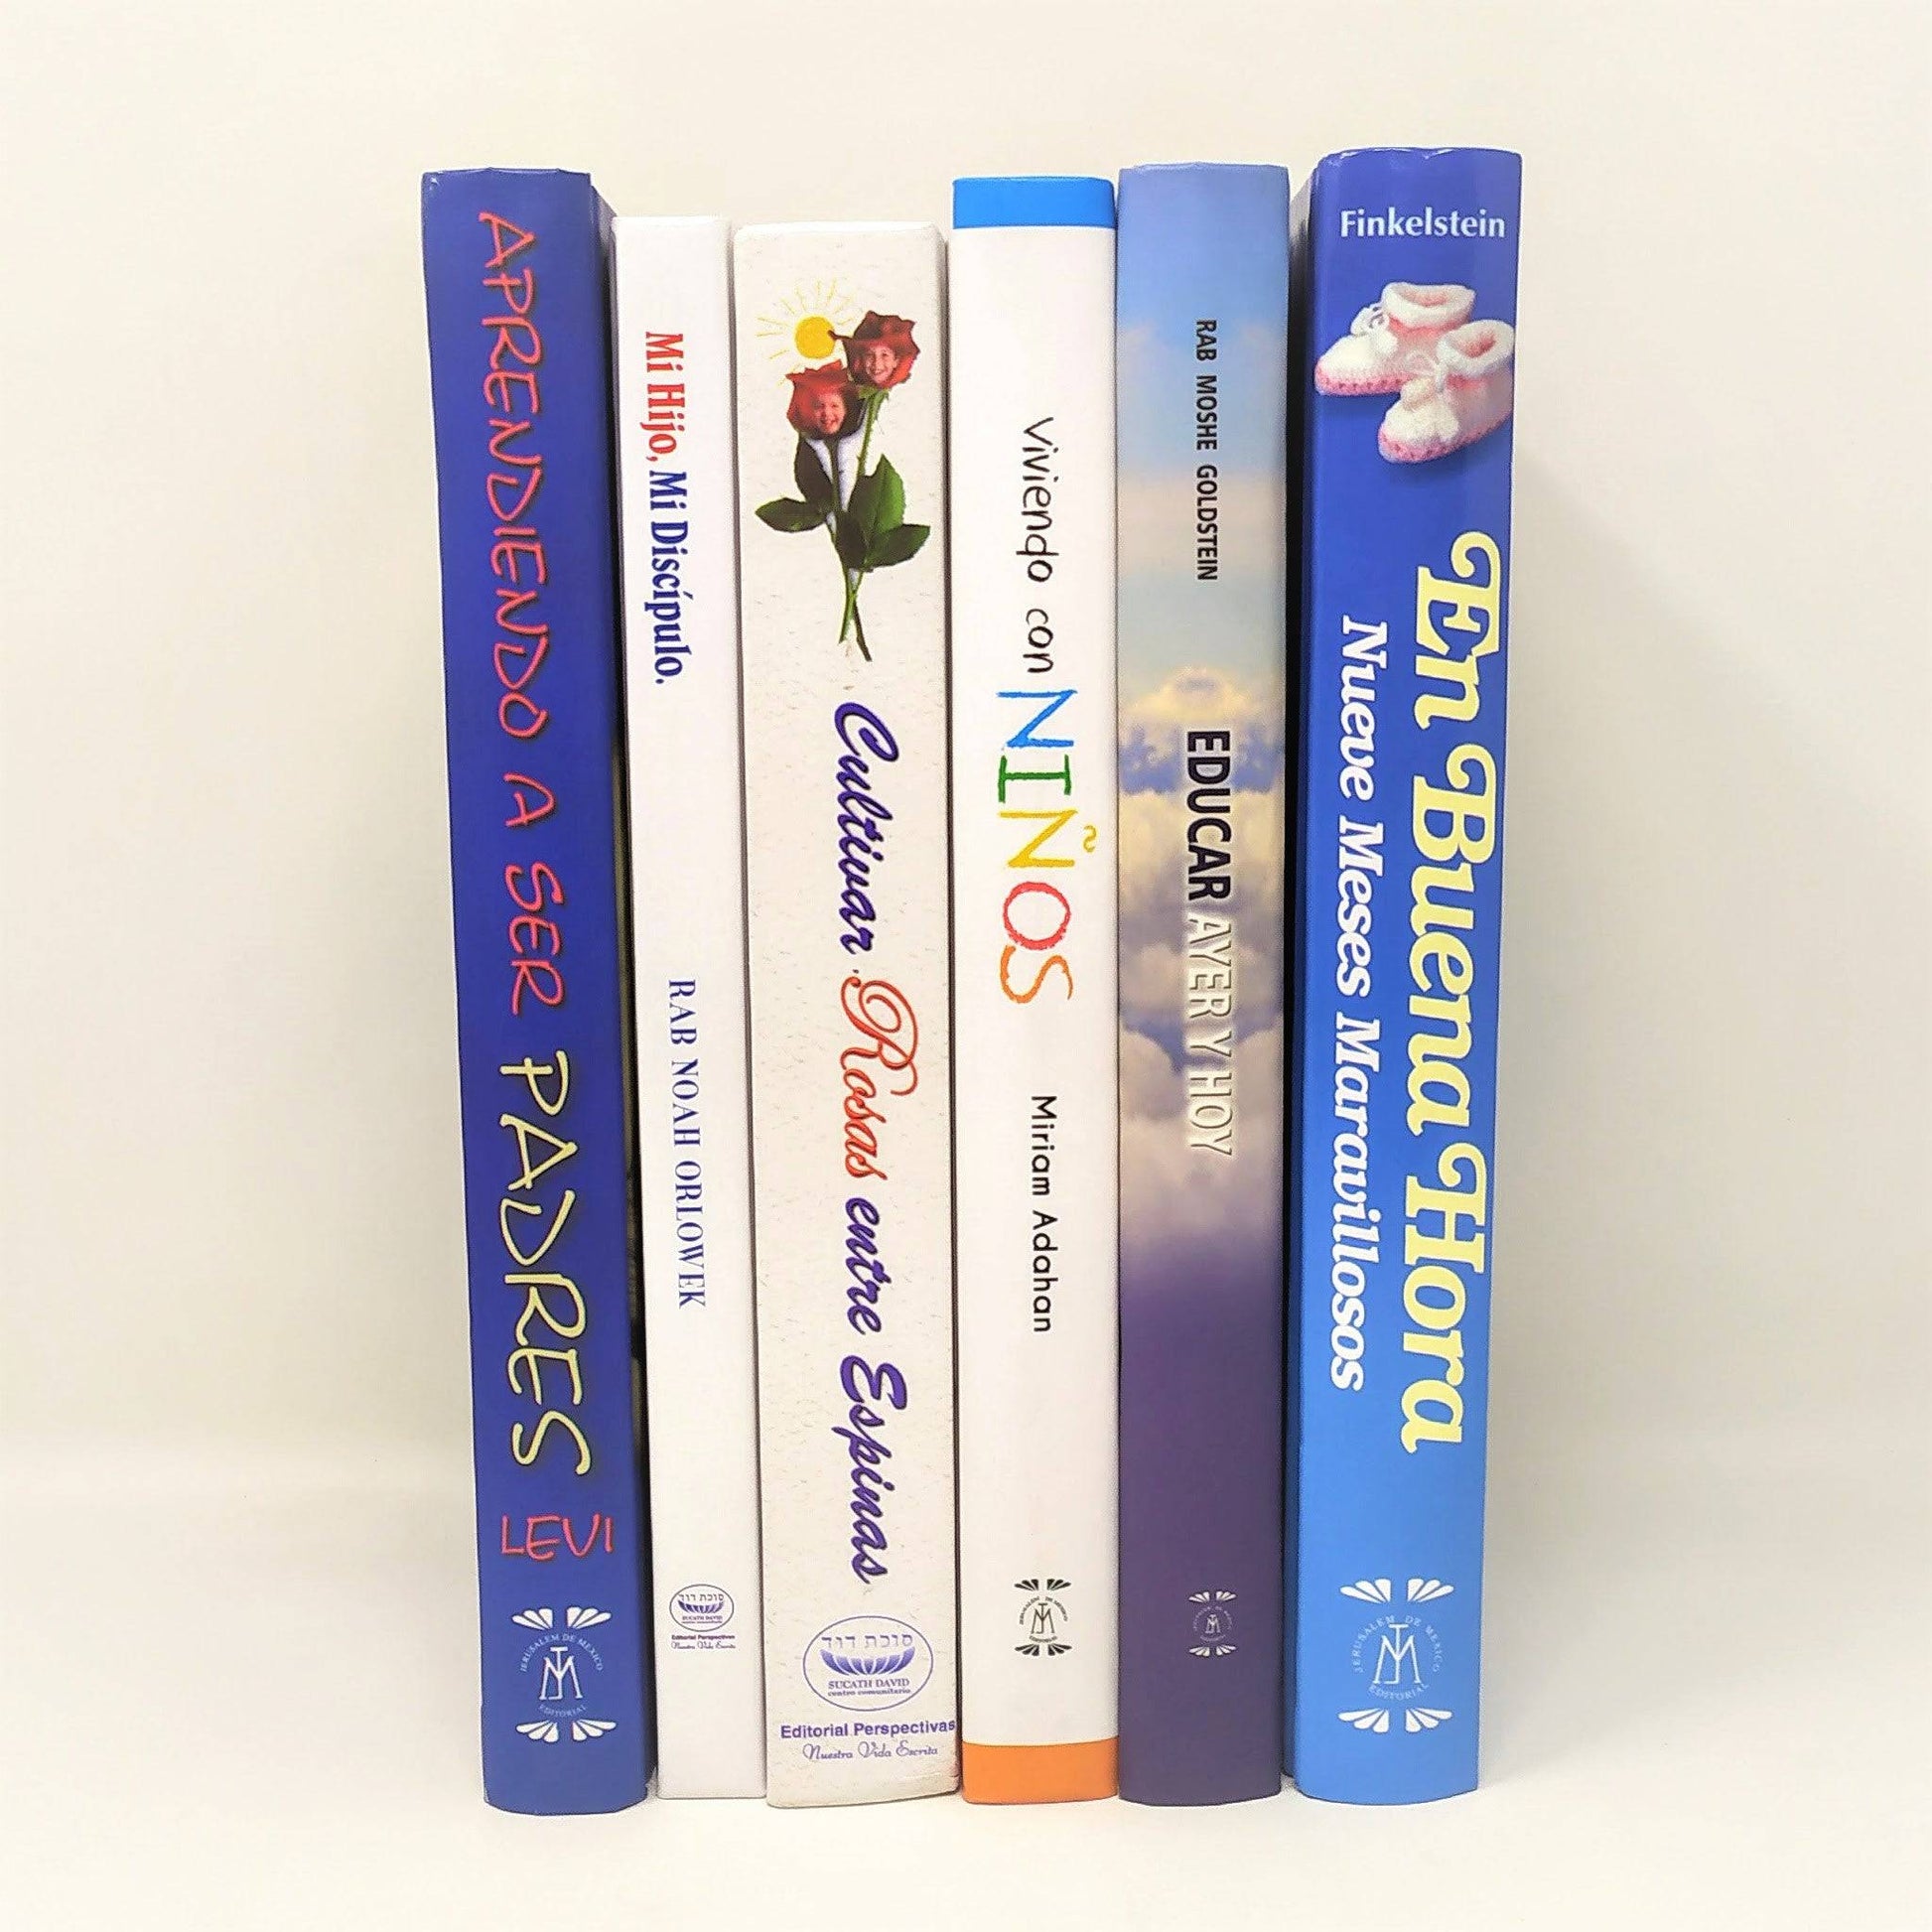 Libros de Educacion Juego de 6 Tomos - Libreria Jerusalem Centro